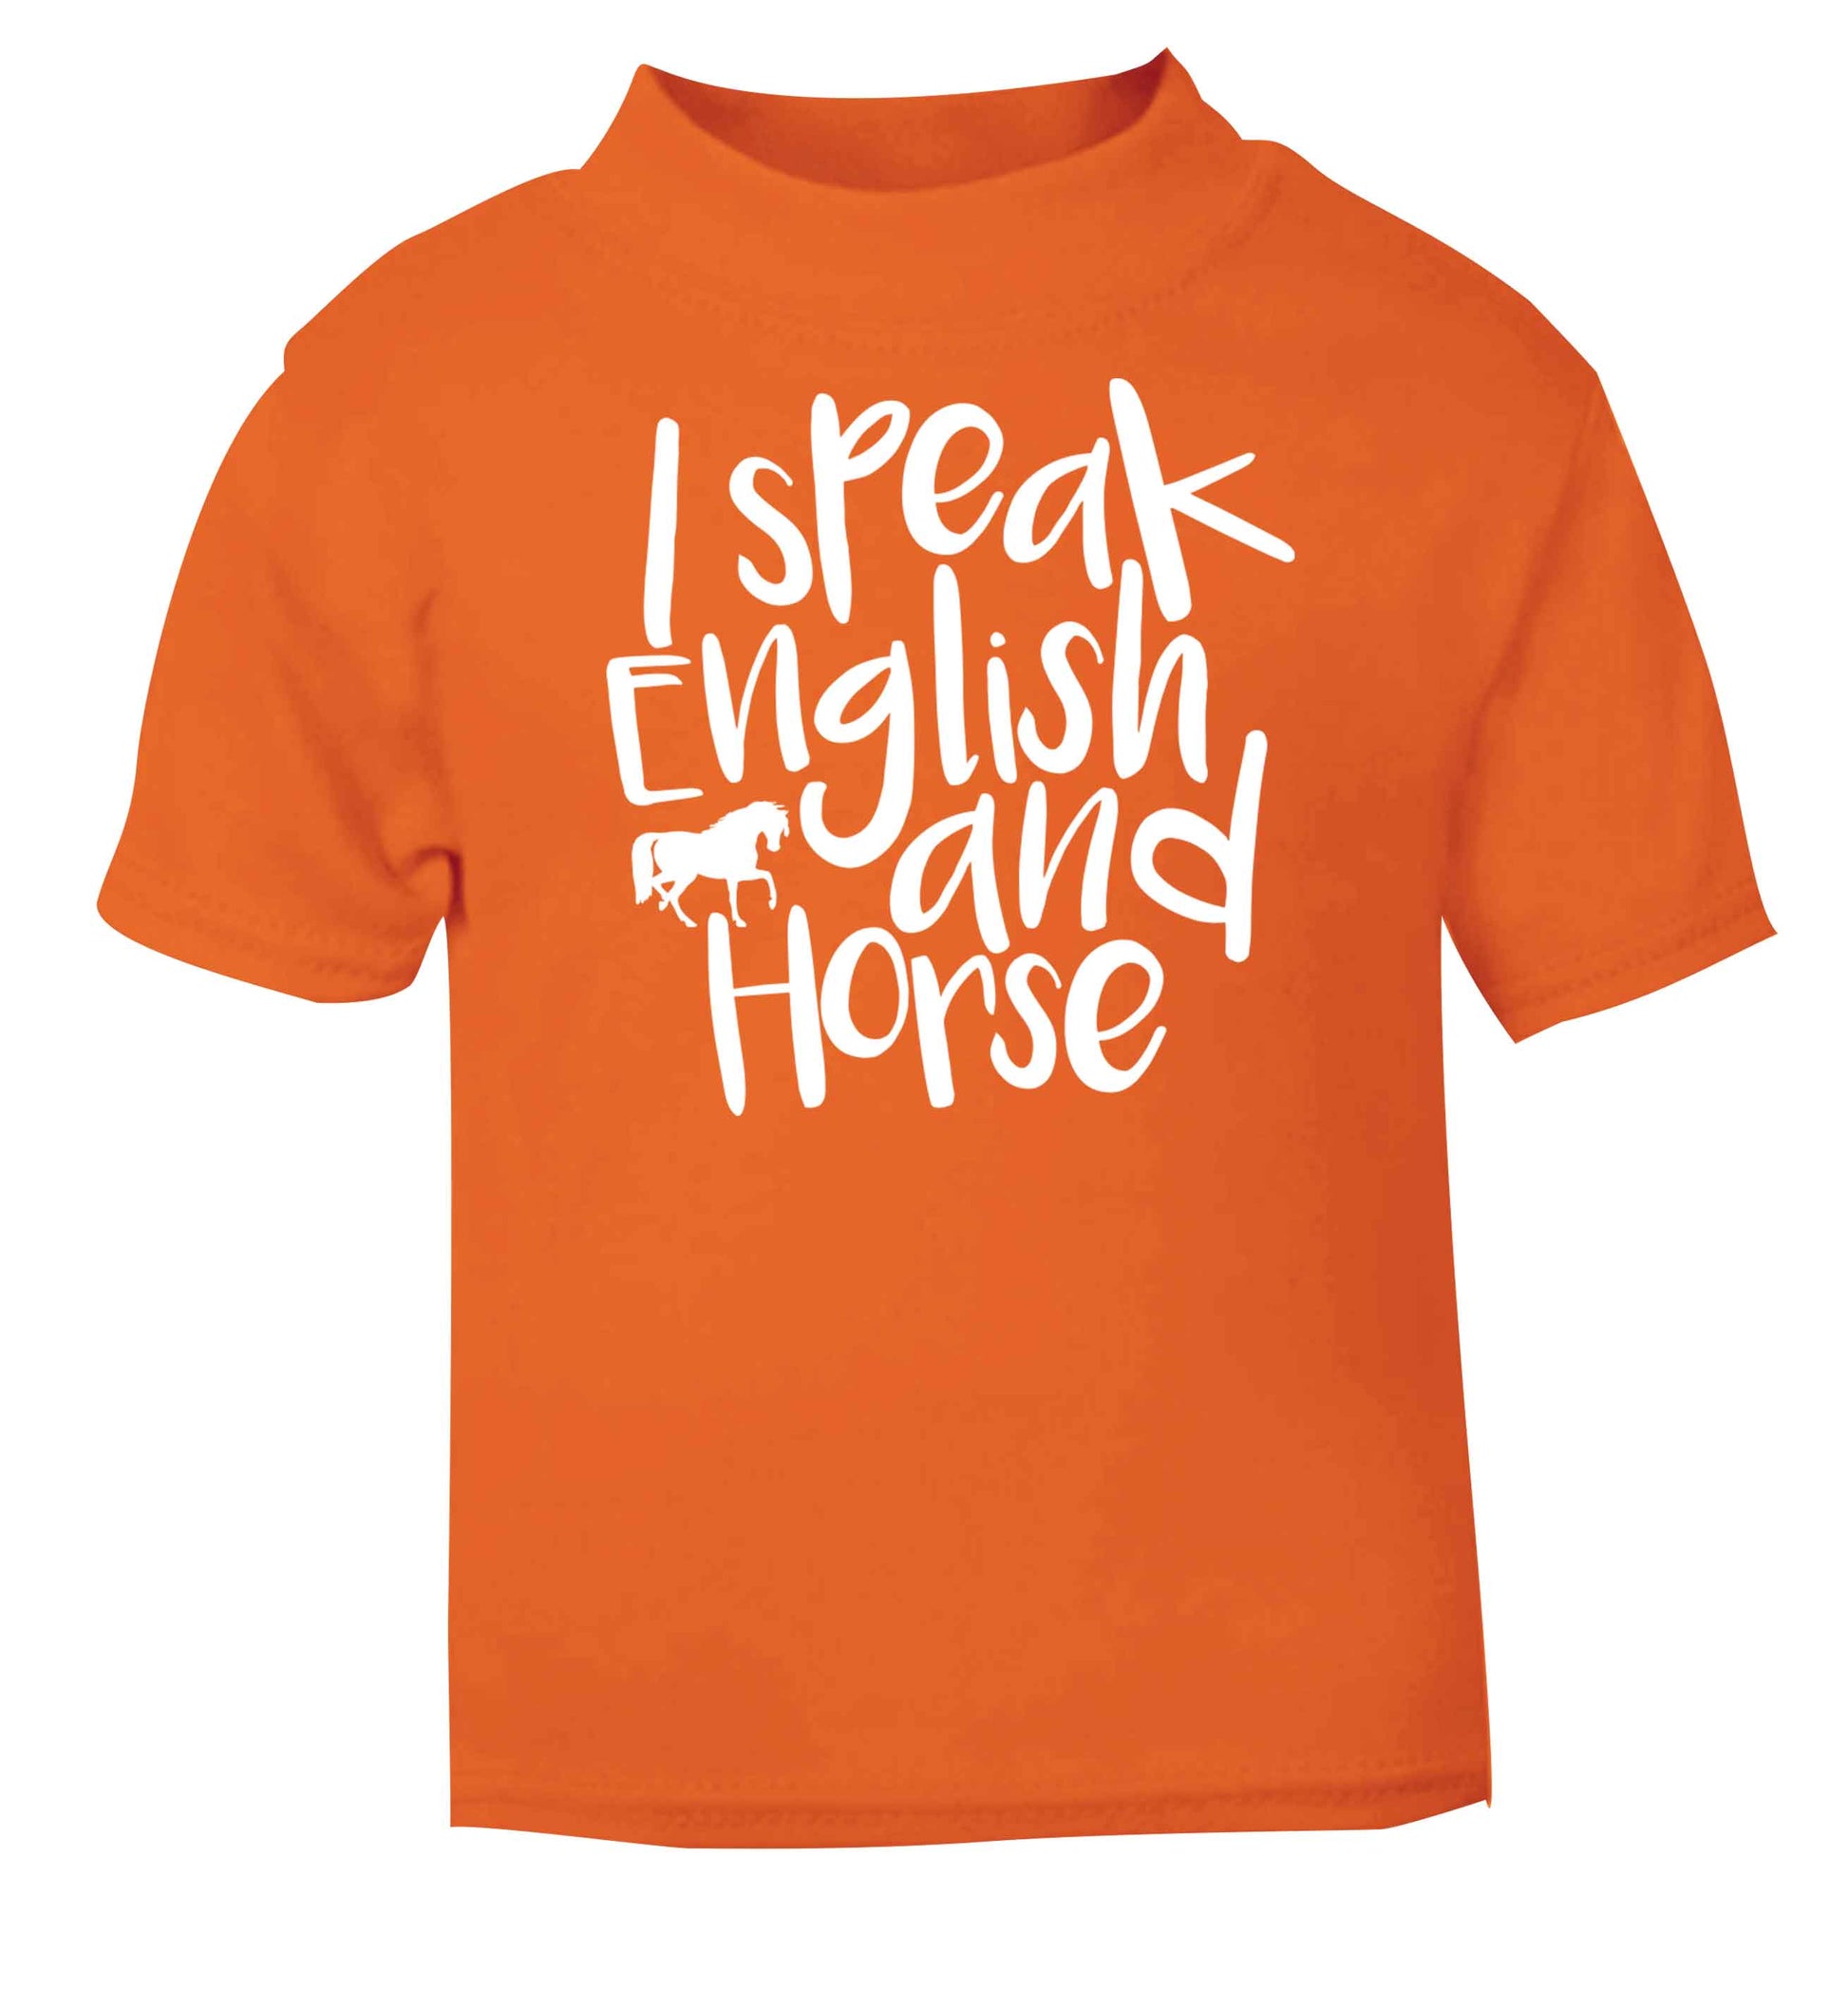 I speak English and horse orange baby toddler Tshirt 2 Years